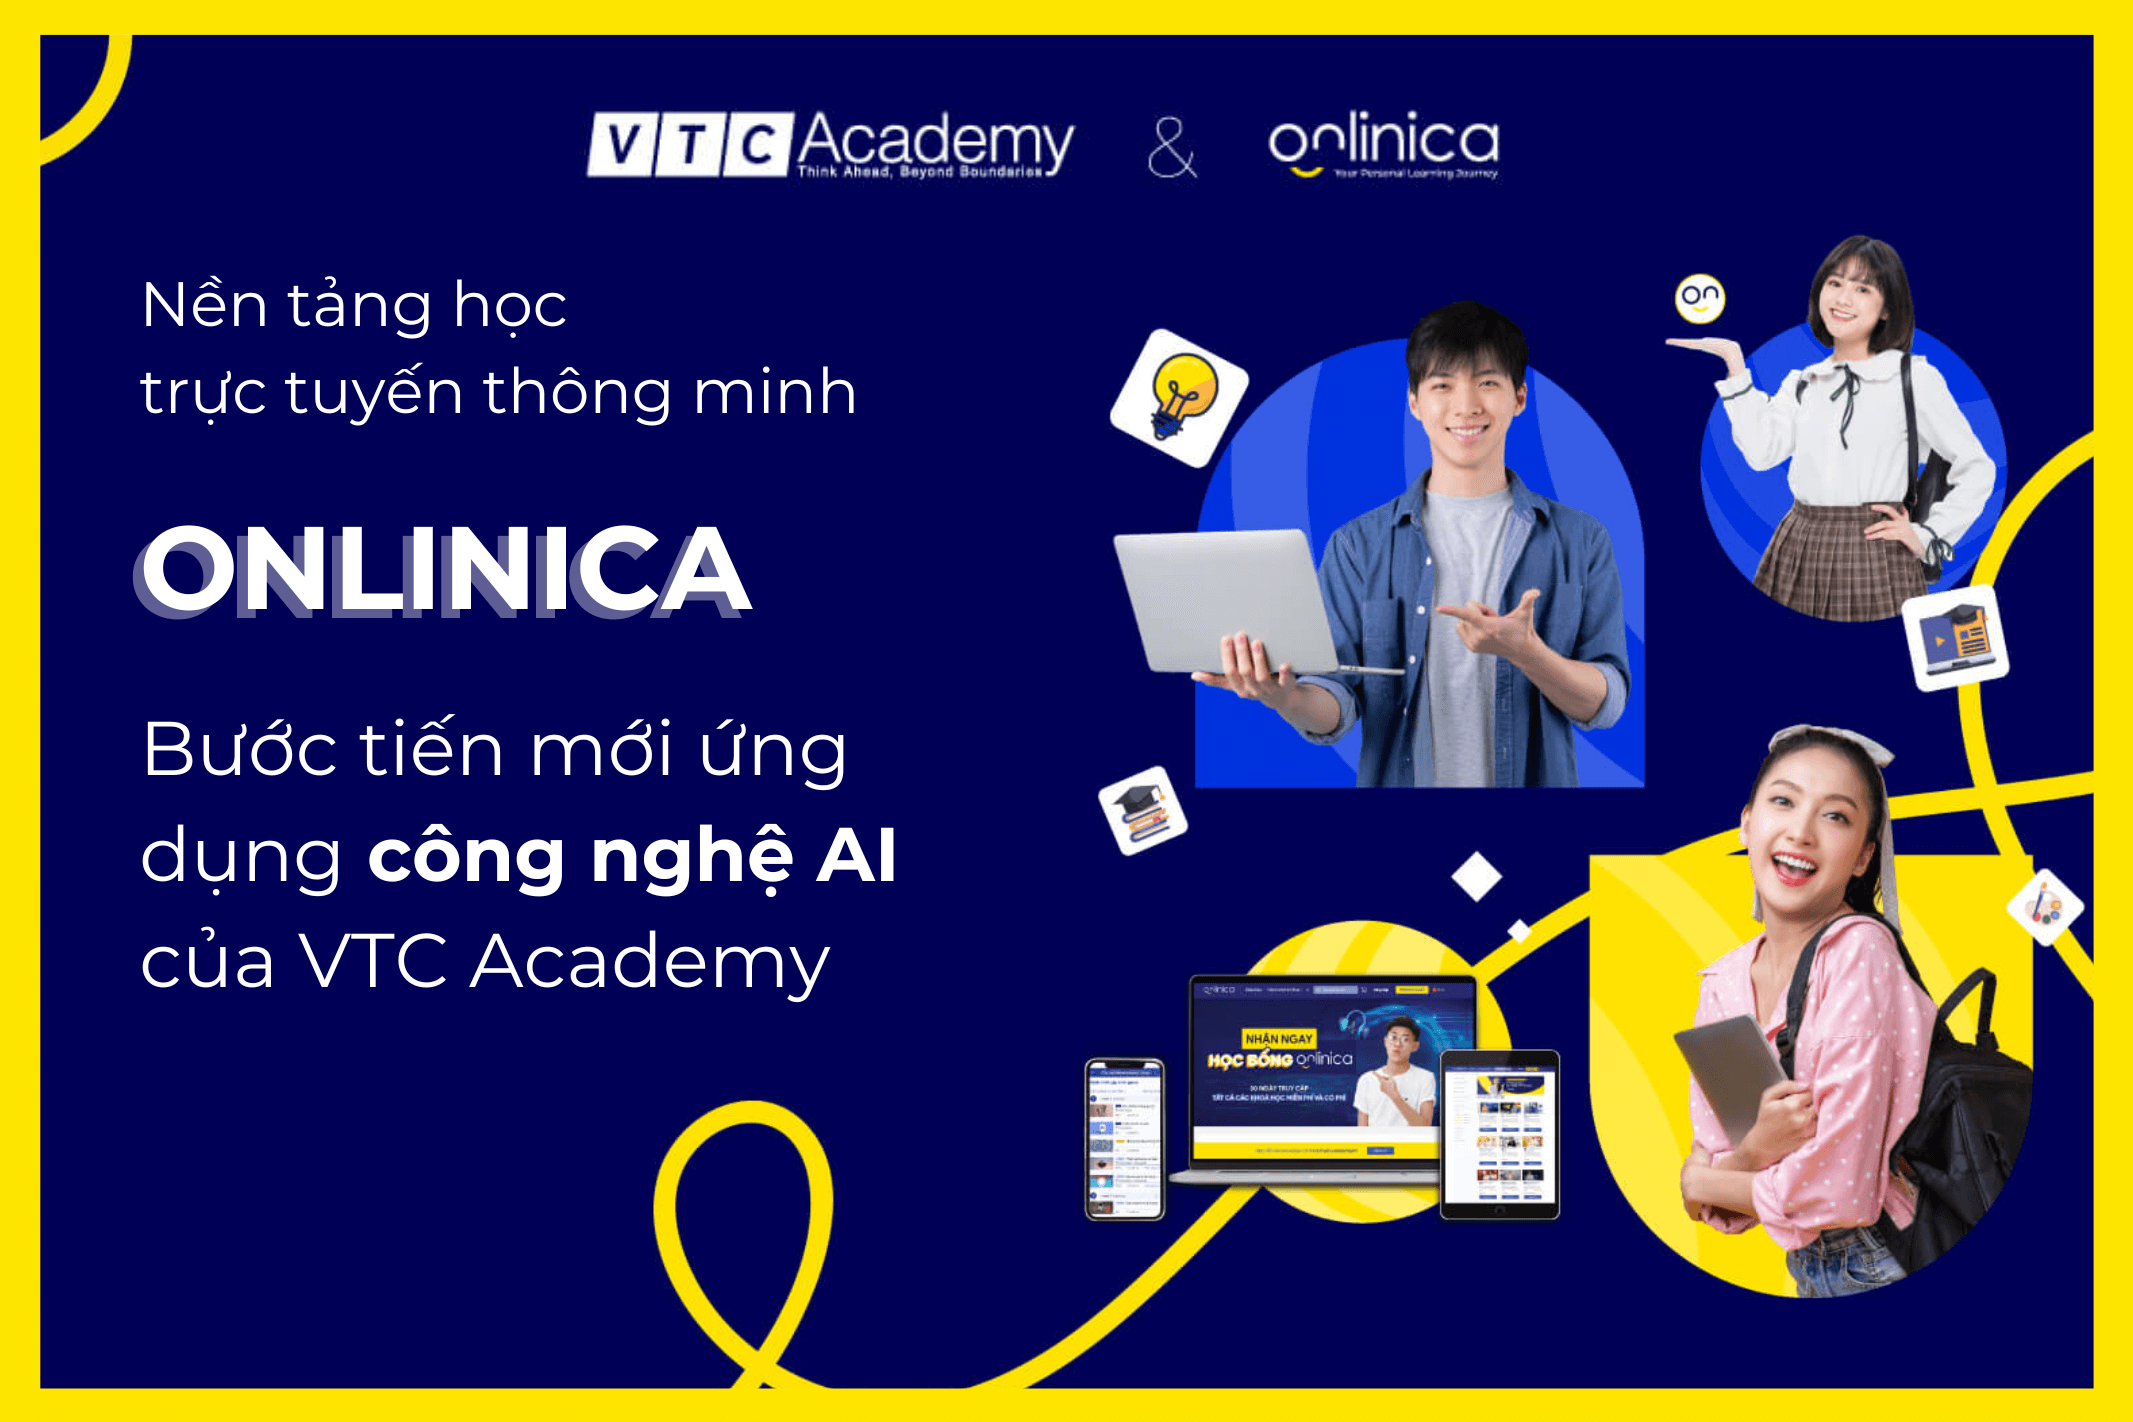 Onlinica - Bước tiến mới trong nỗ lực xây dựng hệ sinh thái ứng dụng công nghệ AI hiện đại của VTC Academy